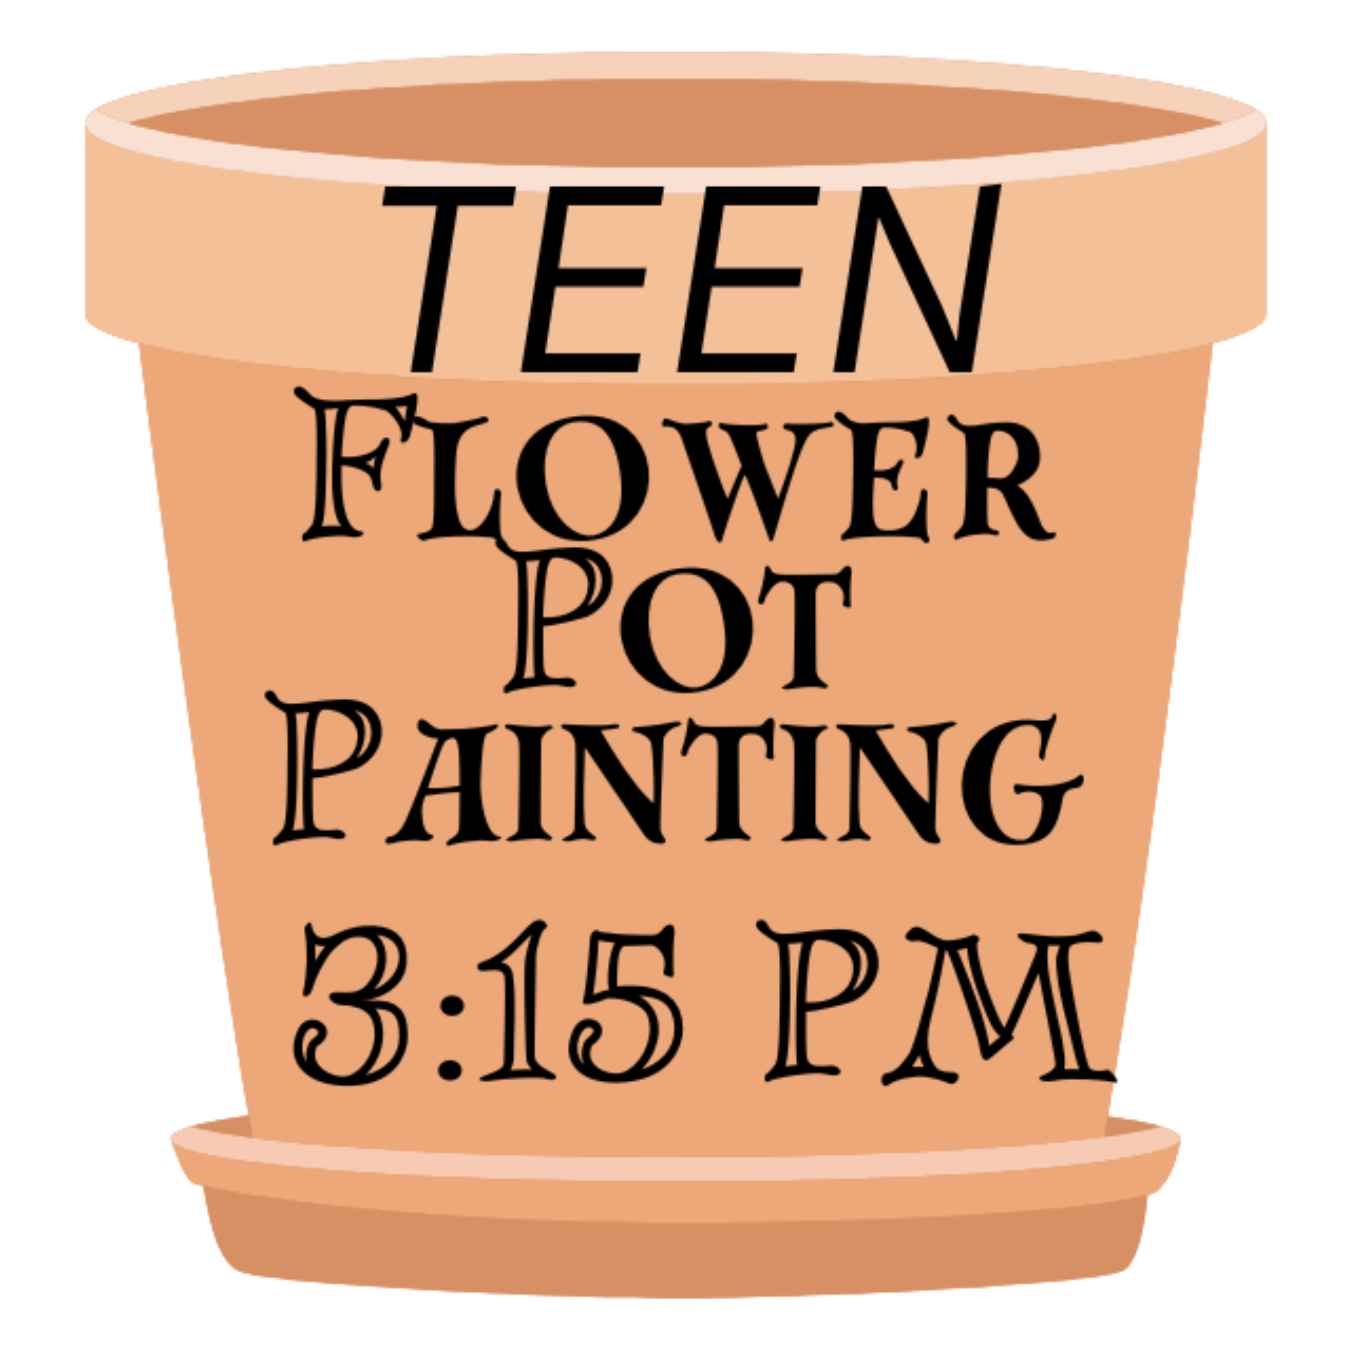 Teen Flower Pot Painting